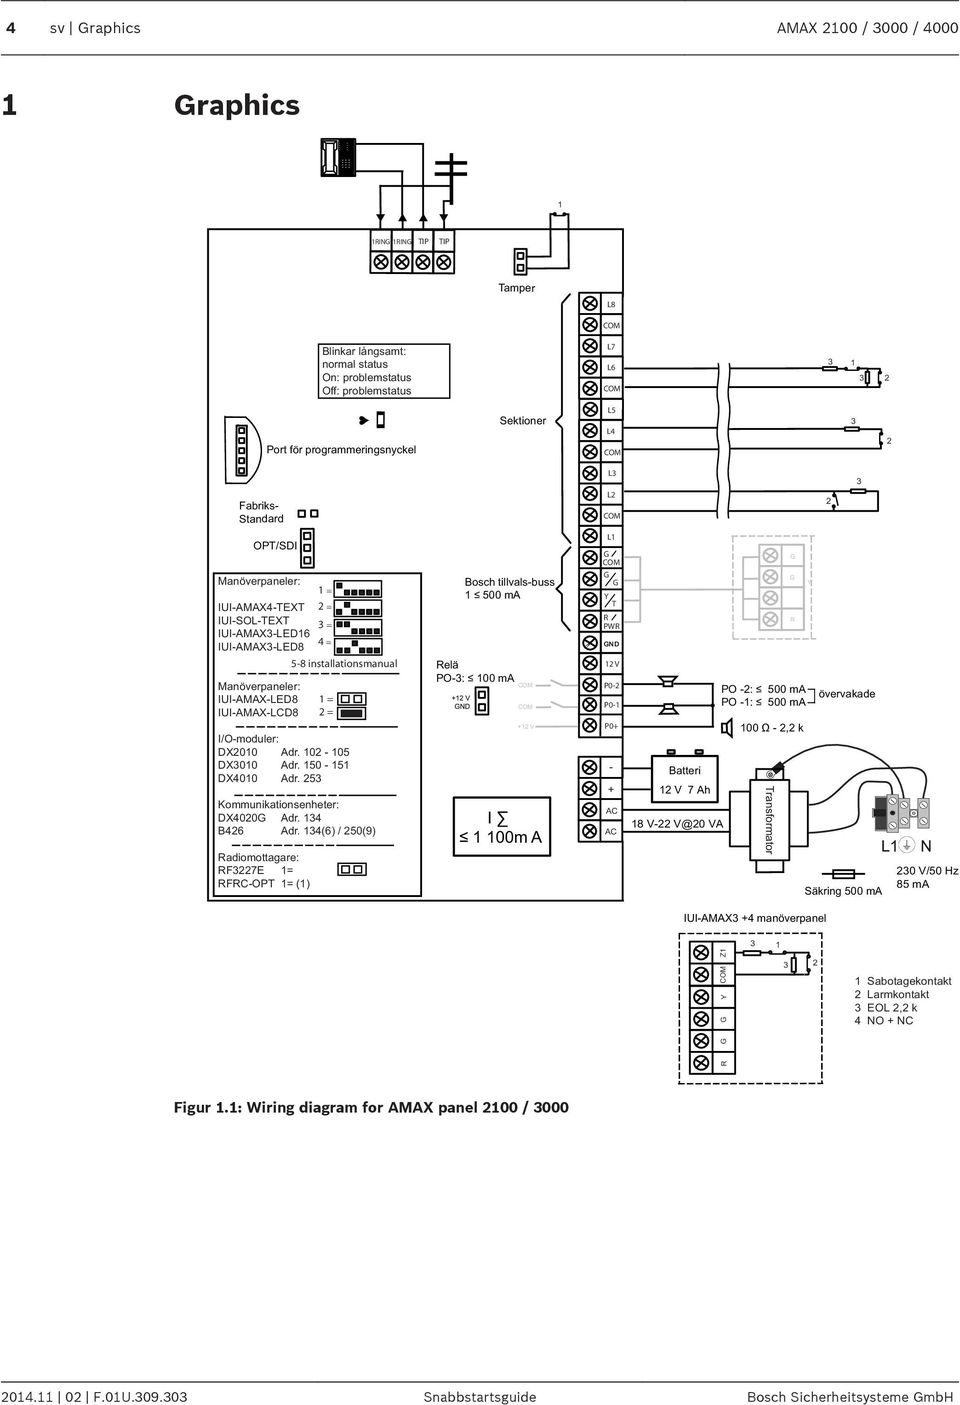 IUI-AMAX-LCD8 I/O-moduler: DX2010 Adr. 102-105 DX3010 Adr. 150-151 DX4010 Adr. 253 Kommunikationsenheter: DX4020G Adr. 134 B426 Adr.